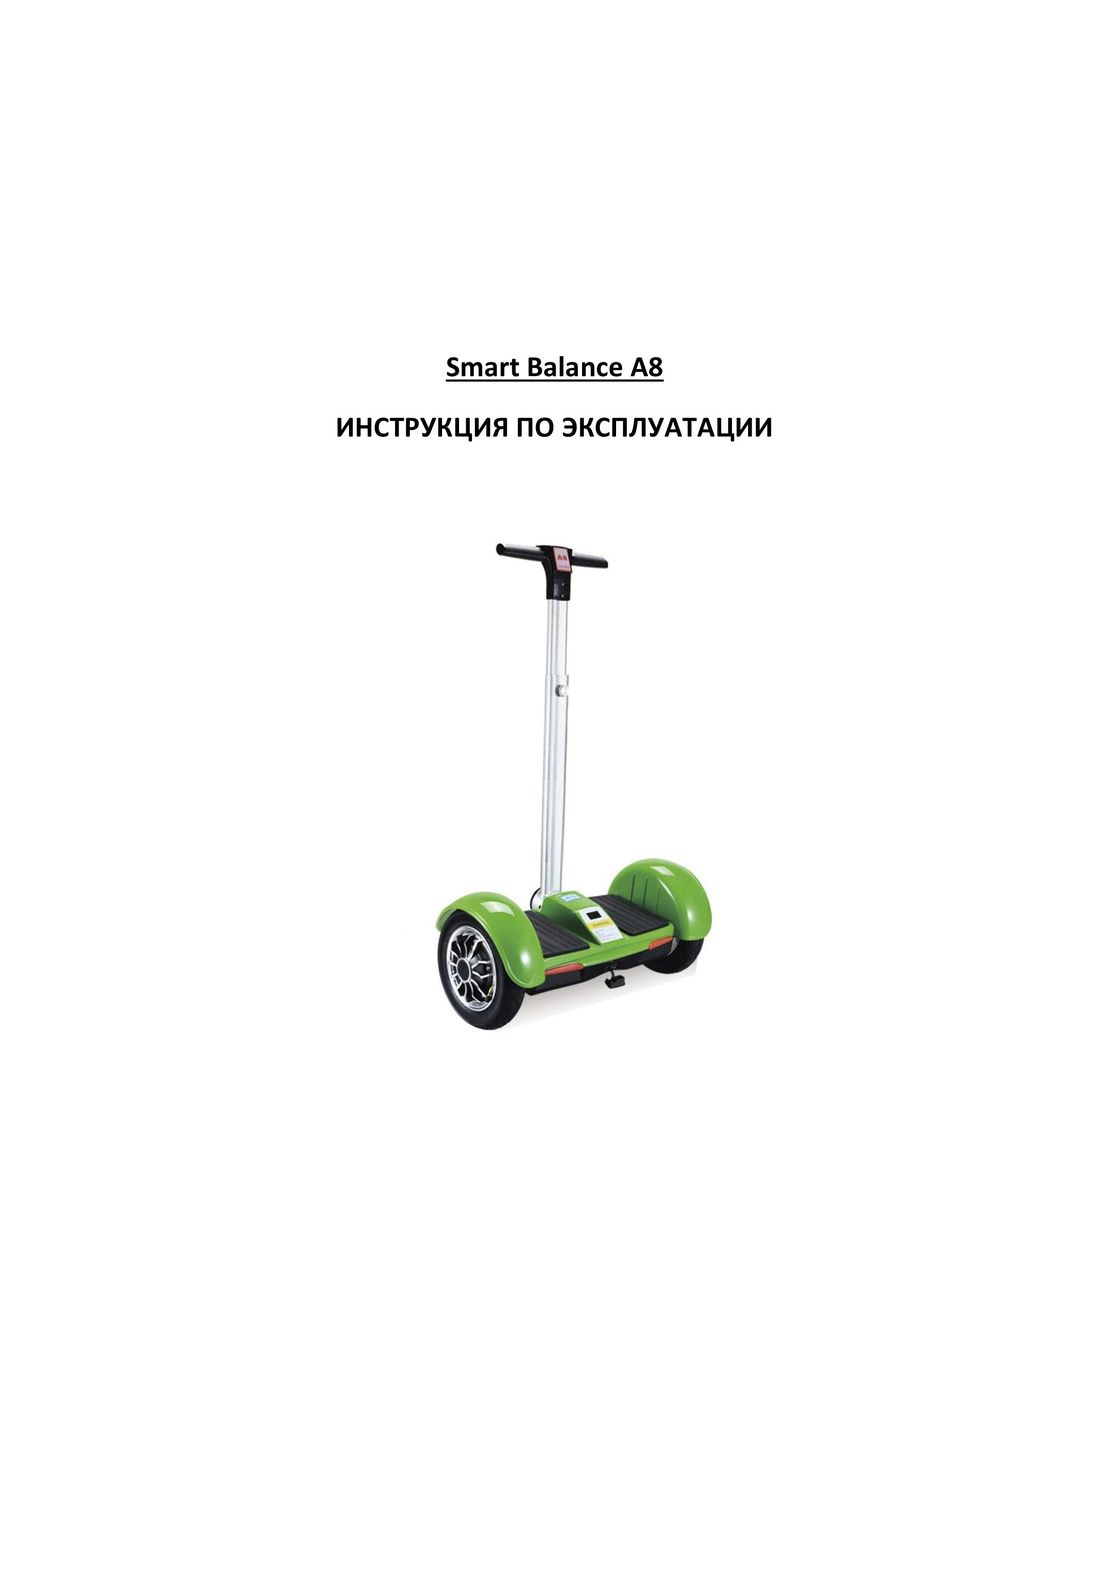 Smart Balance A8 инструкция на русском